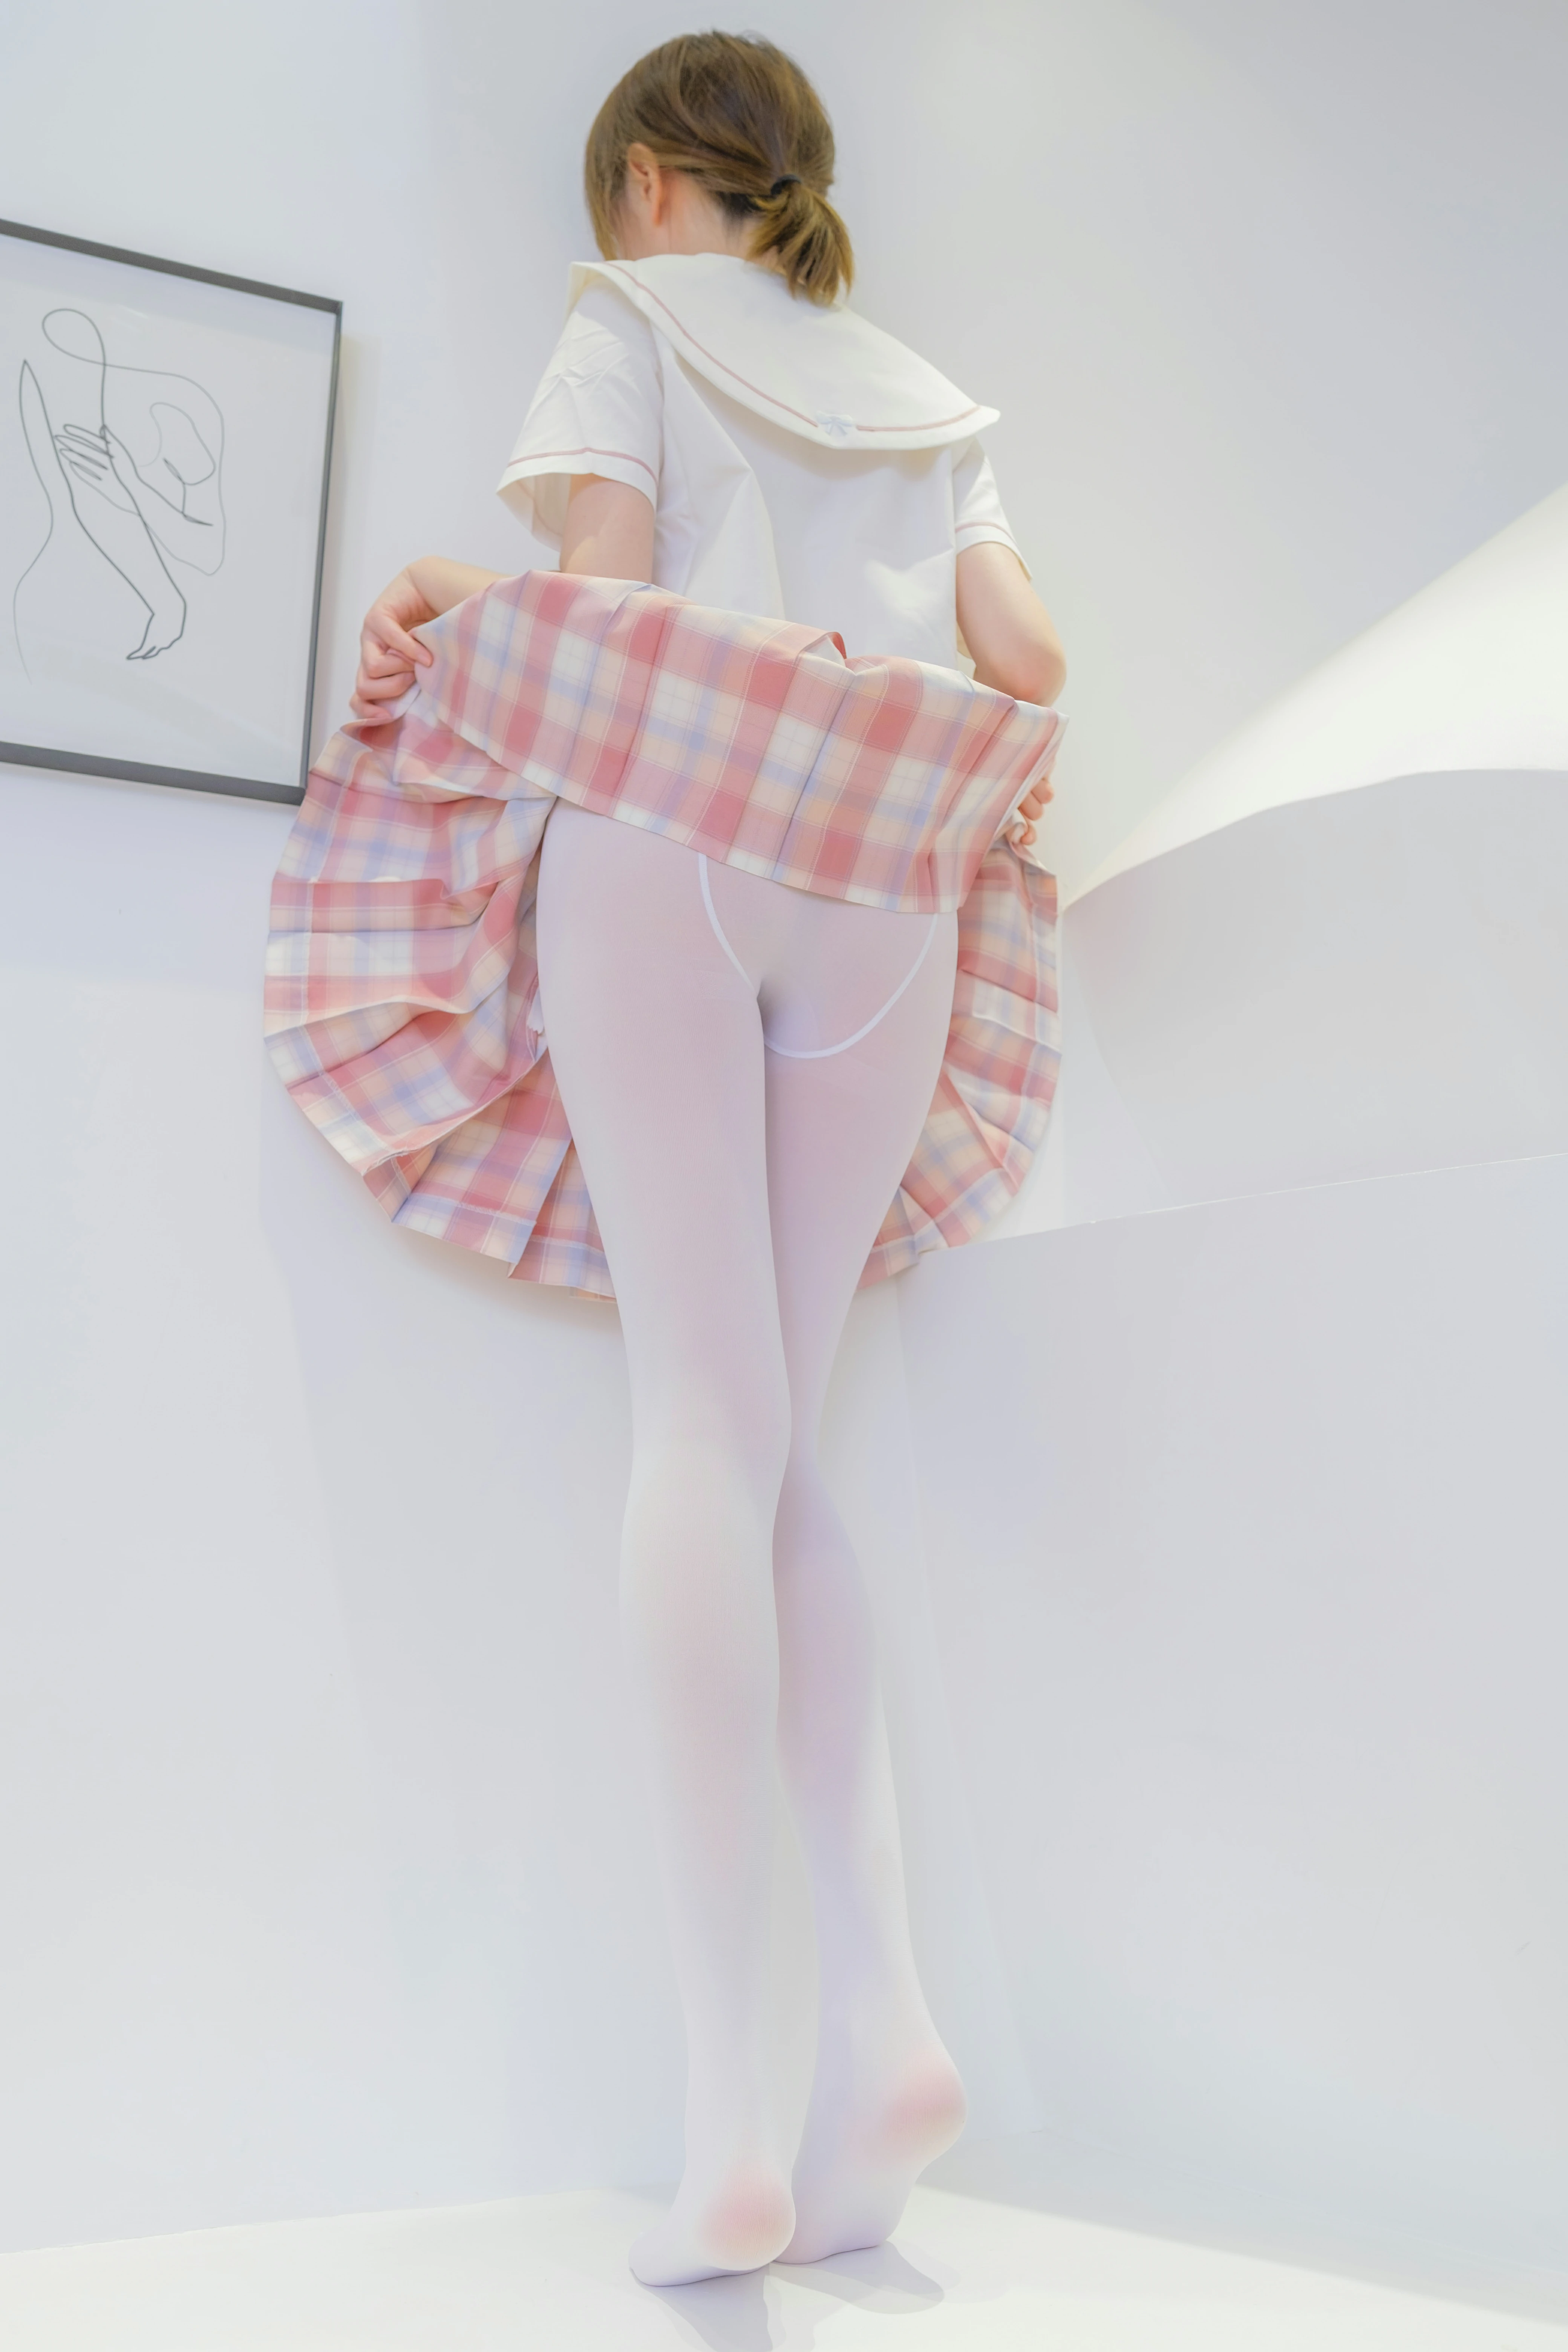 [森萝财团]GZAY3 酒店JK制服小萝莉 白色衬衫与粉色短裙加白色丝袜美腿性感私房写真集,0016